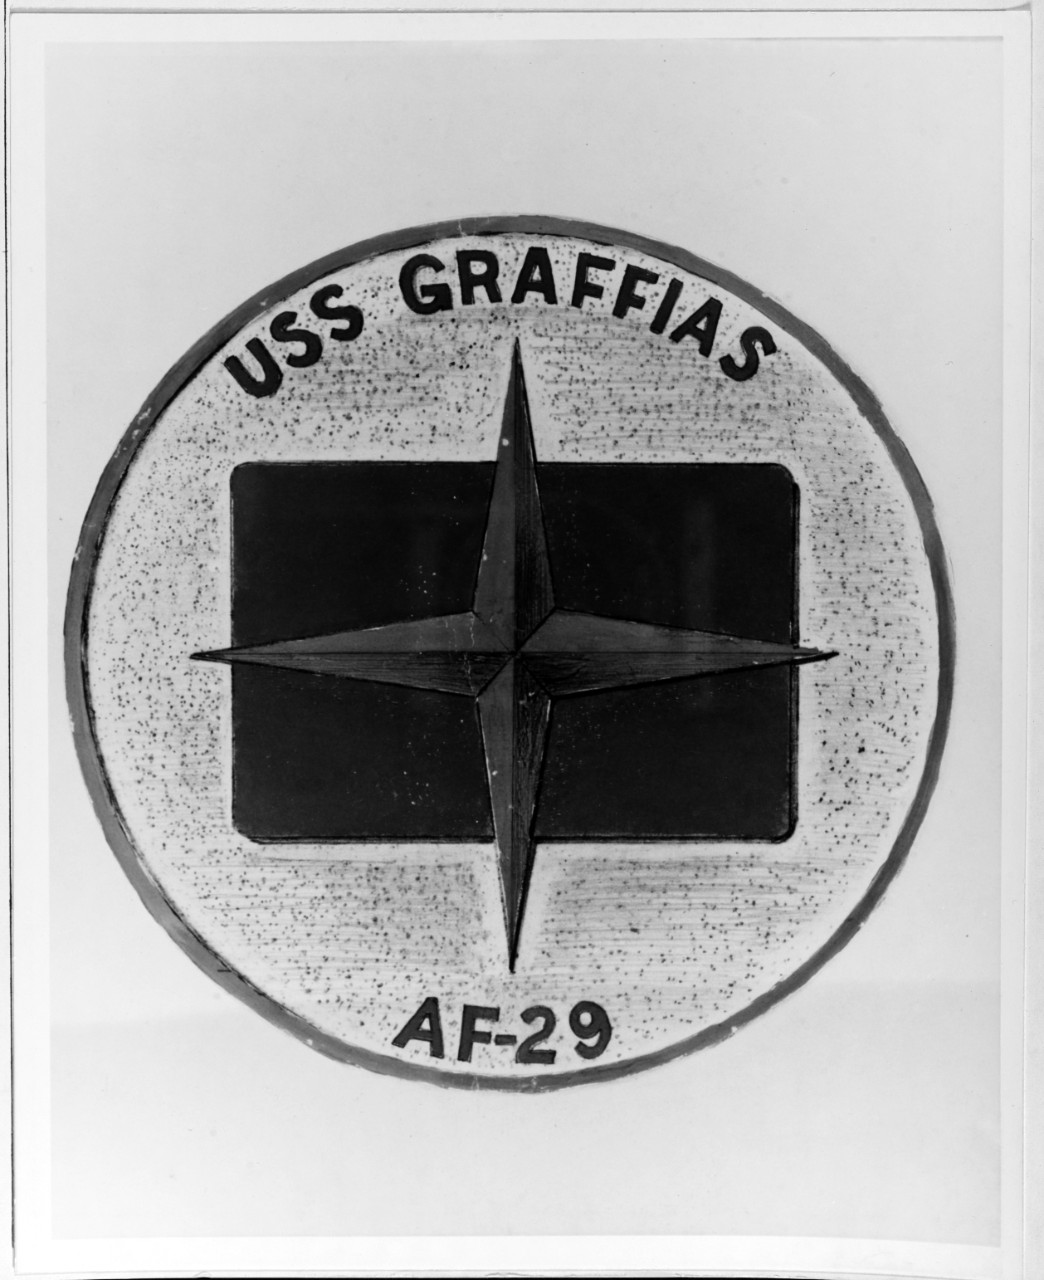 Insignia: USS GRAFFIAS (AF-29)